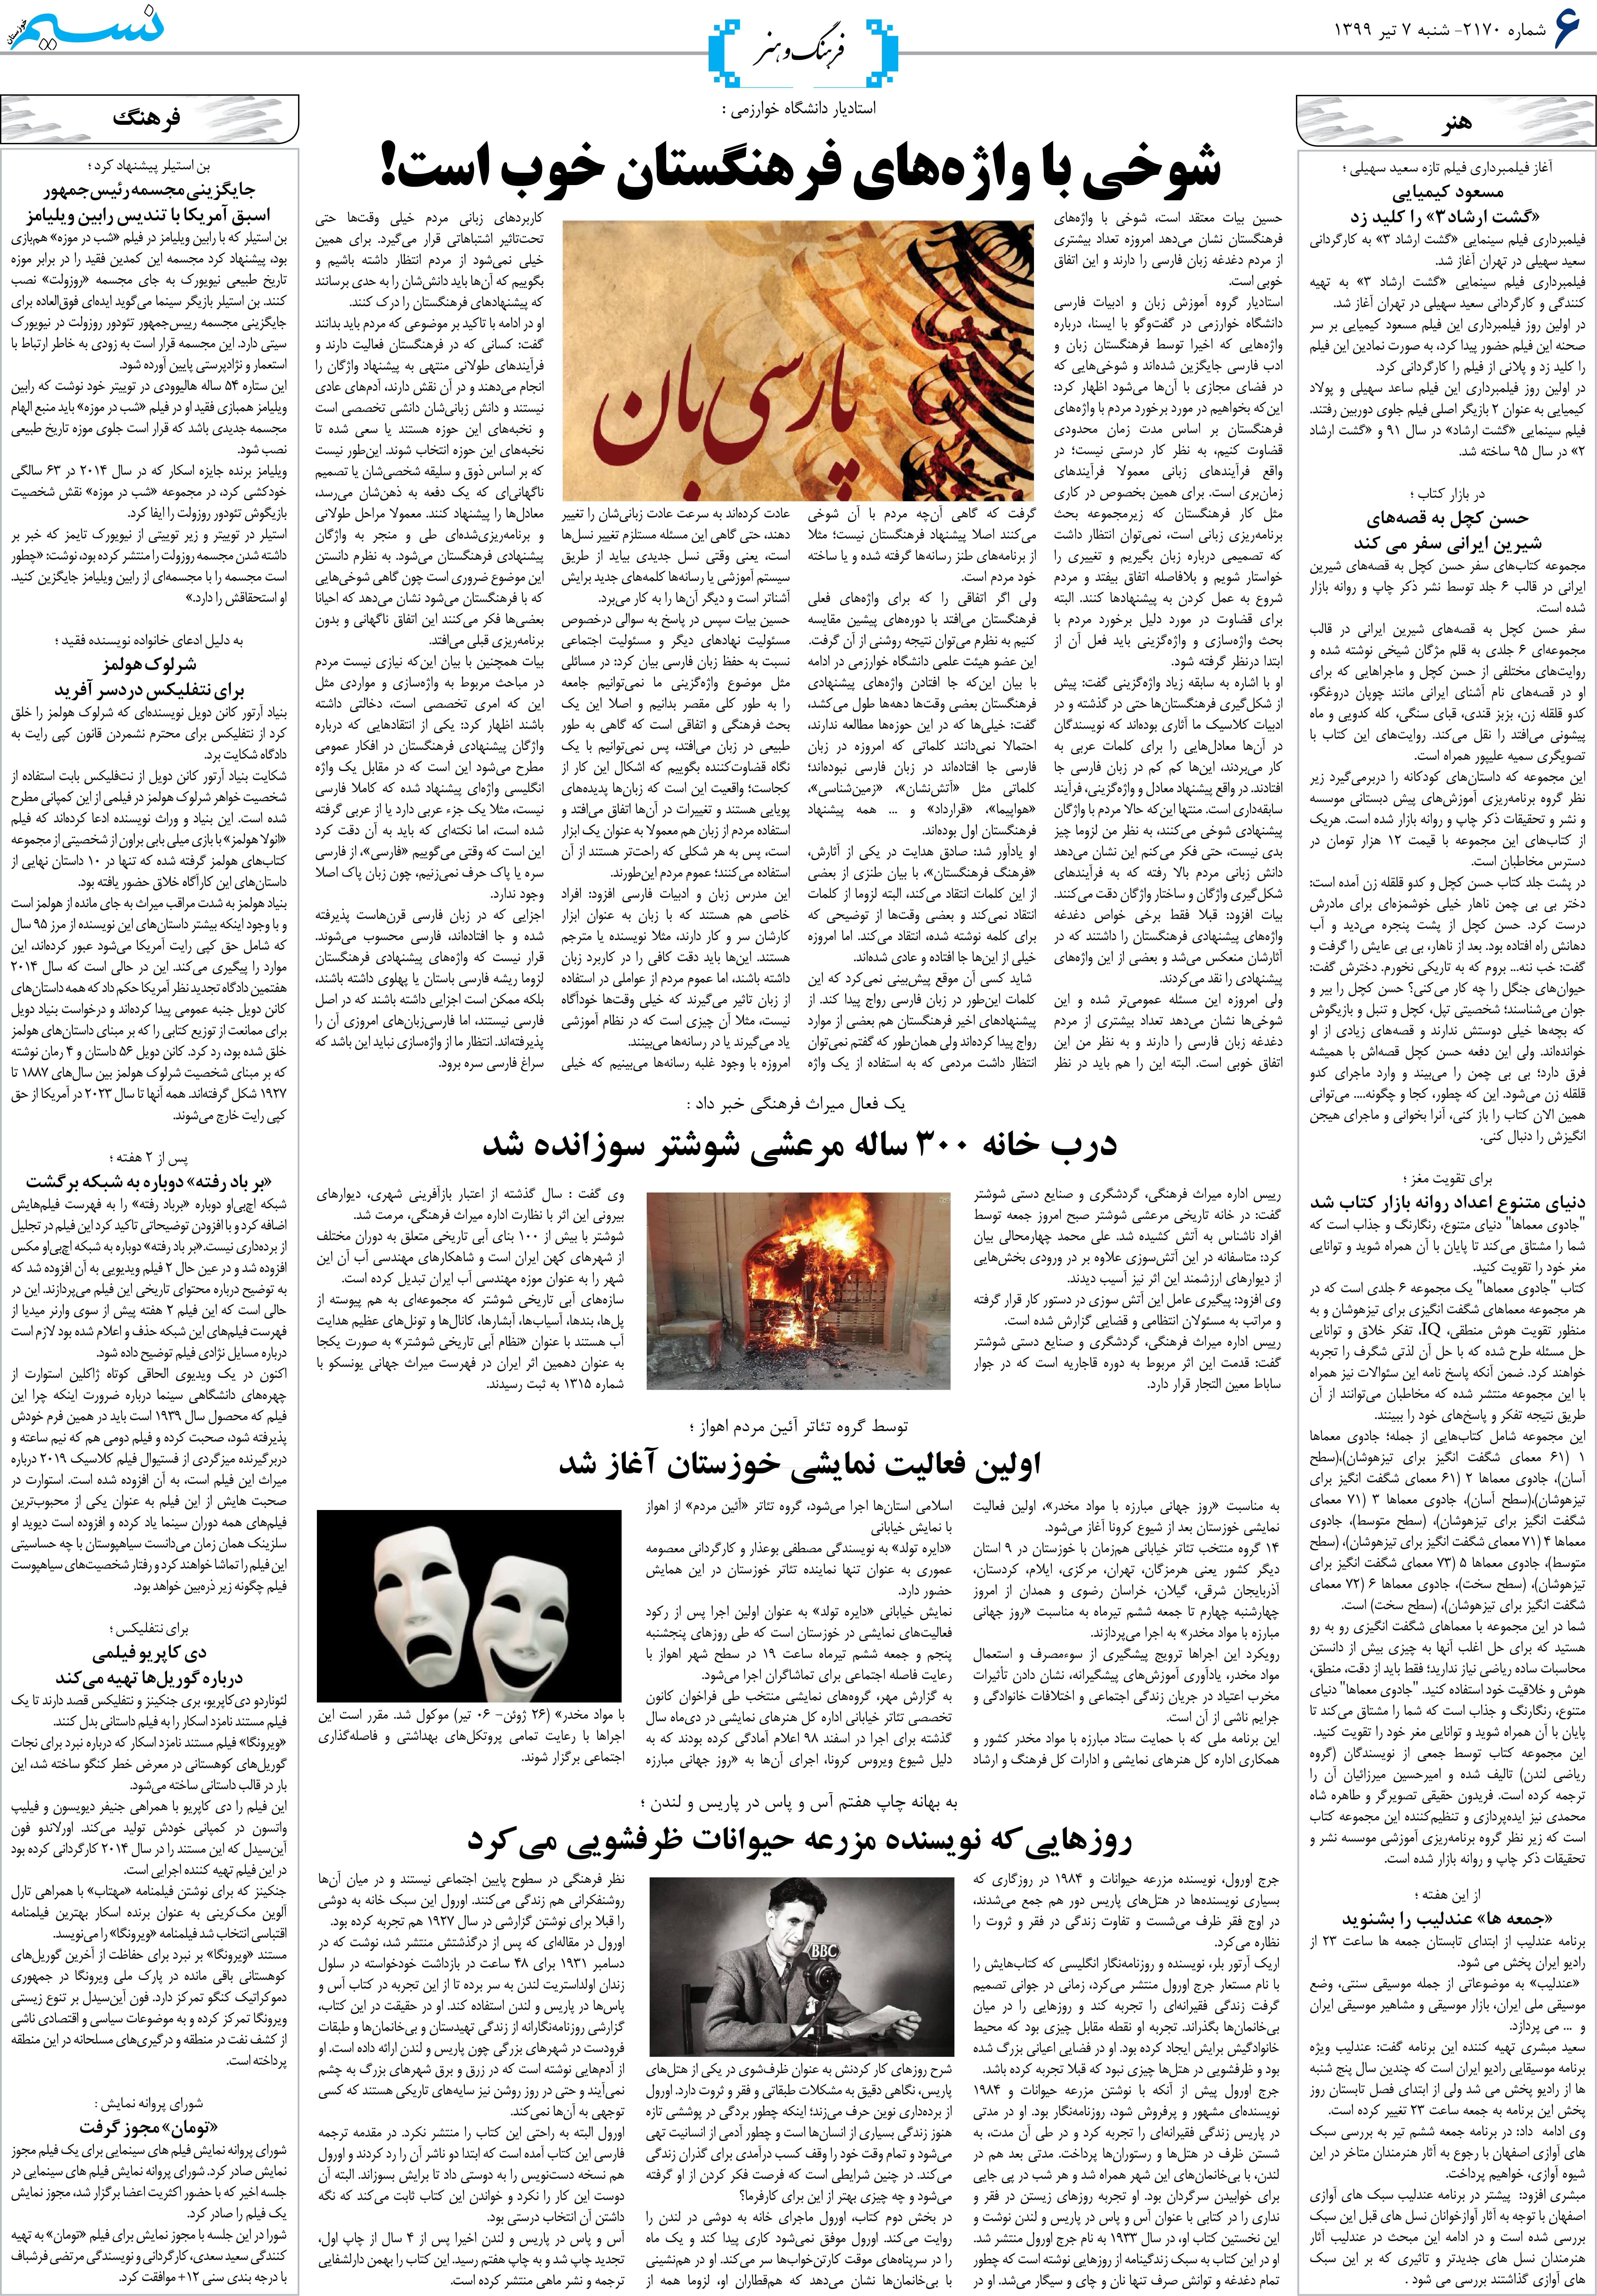 صفحه فرهنگ و هنر روزنامه نسیم شماره 2170